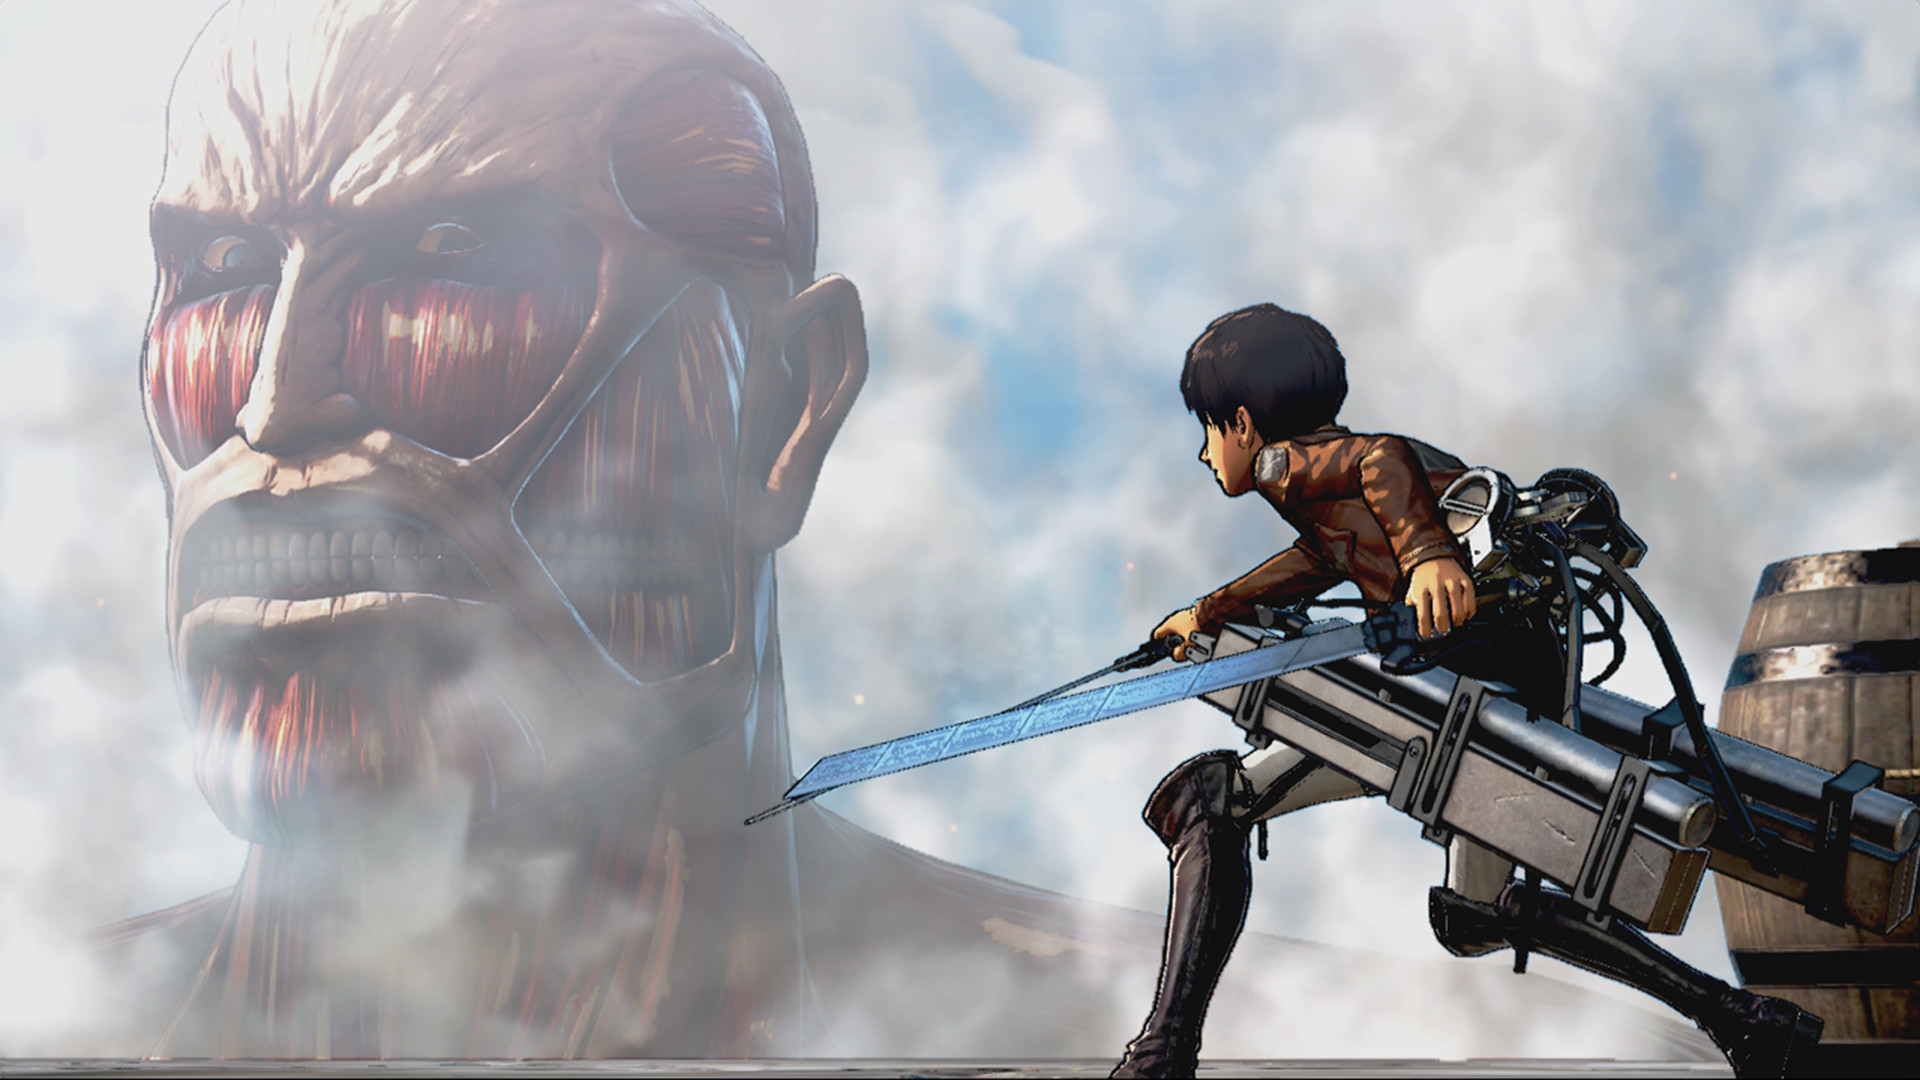 Meilleurs jeux d'anime: Attaque sur Titan. L'image montre un Titan regardant quelqu'un et a l'air affamé